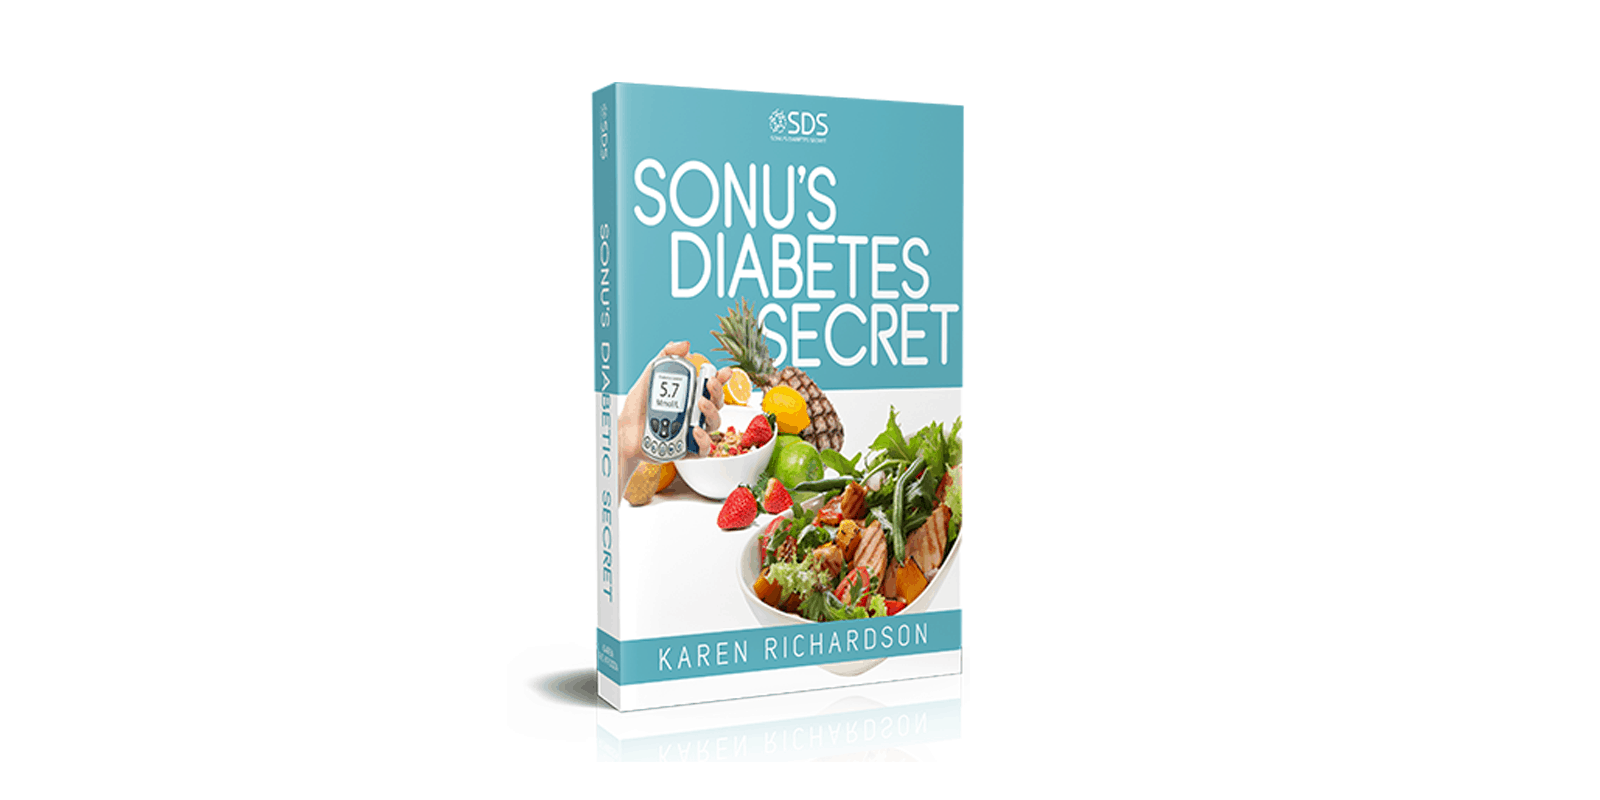 Sonu's Diabetes Secret reviews